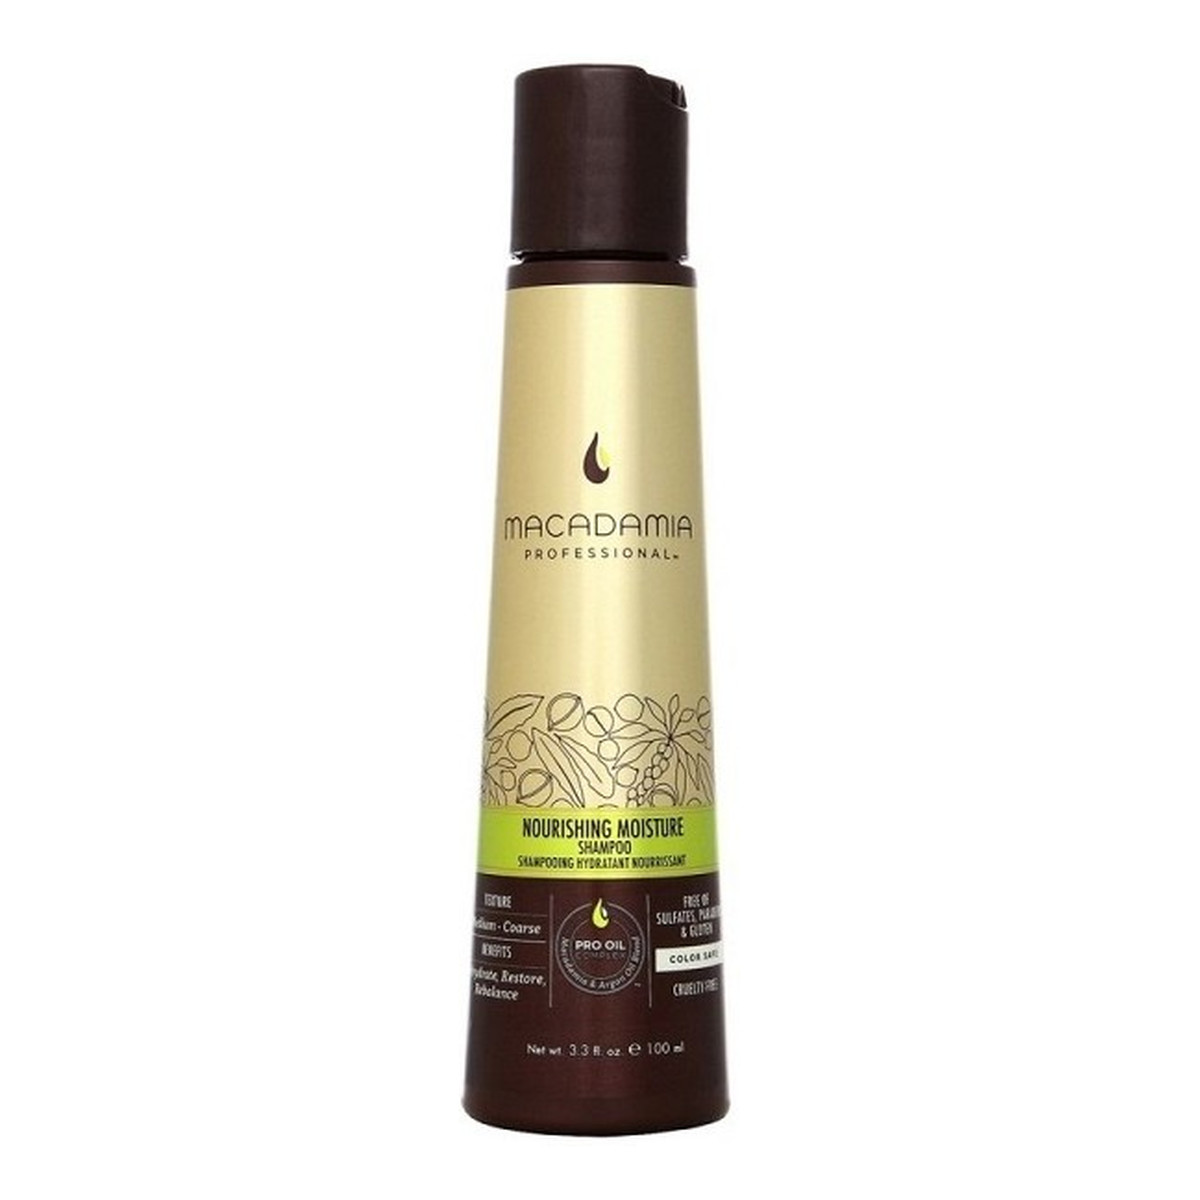 Macadamia Professional Nourishing Moisture szampon do włosów suchych 100ml